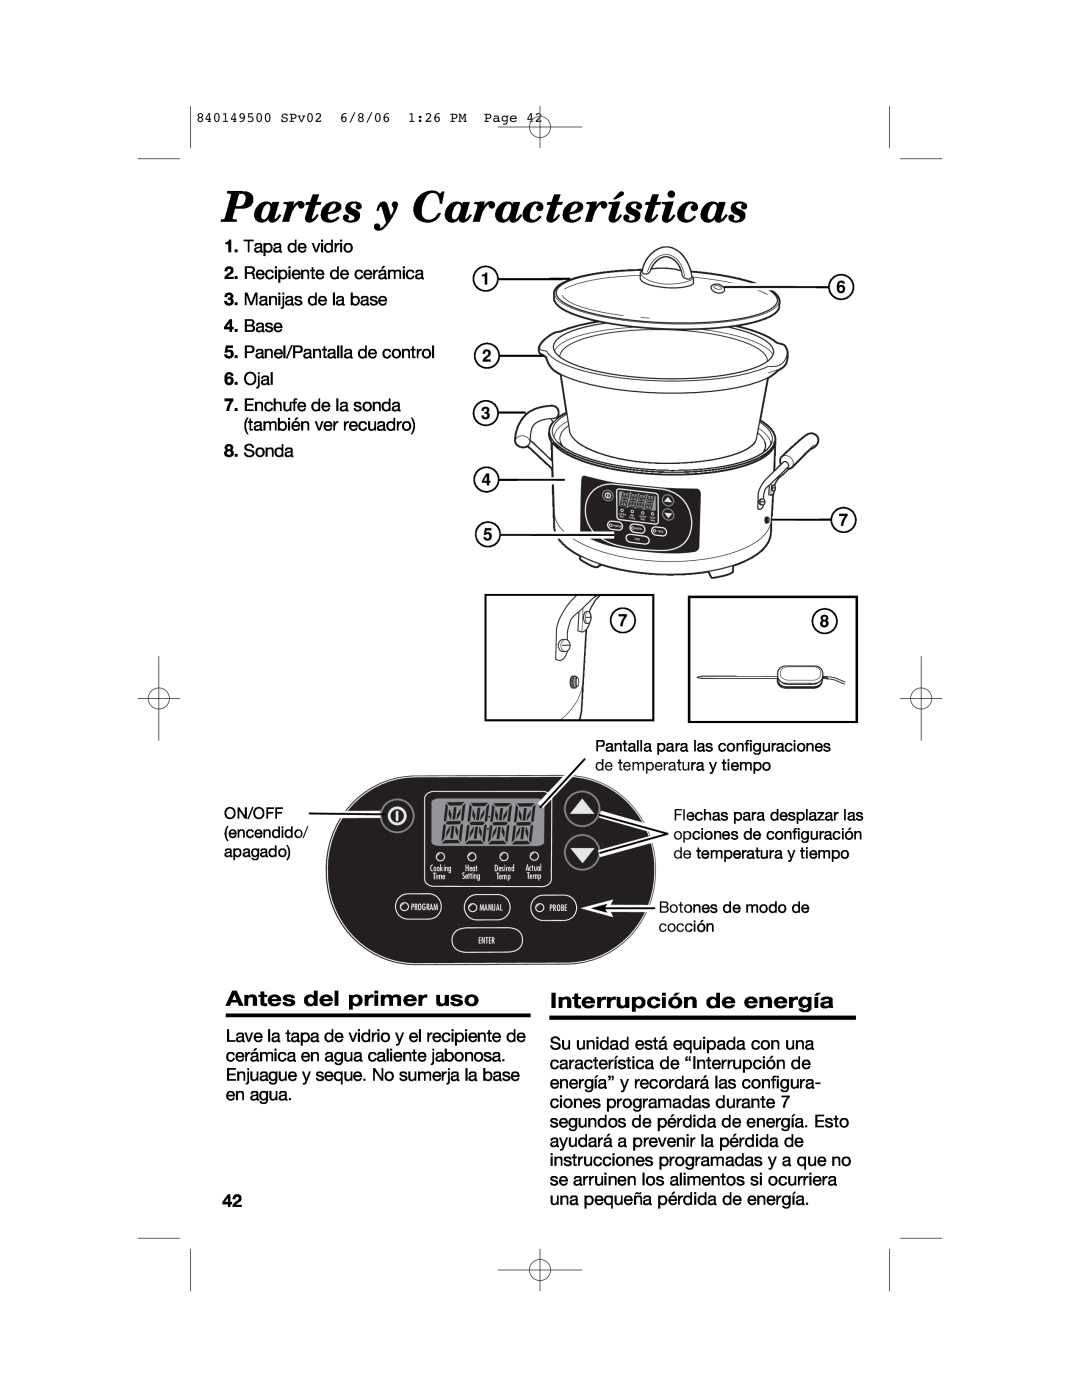 Proctor-Silex 840149500 manual Partes y Características, Antes del primer uso, Interrupción de energía 